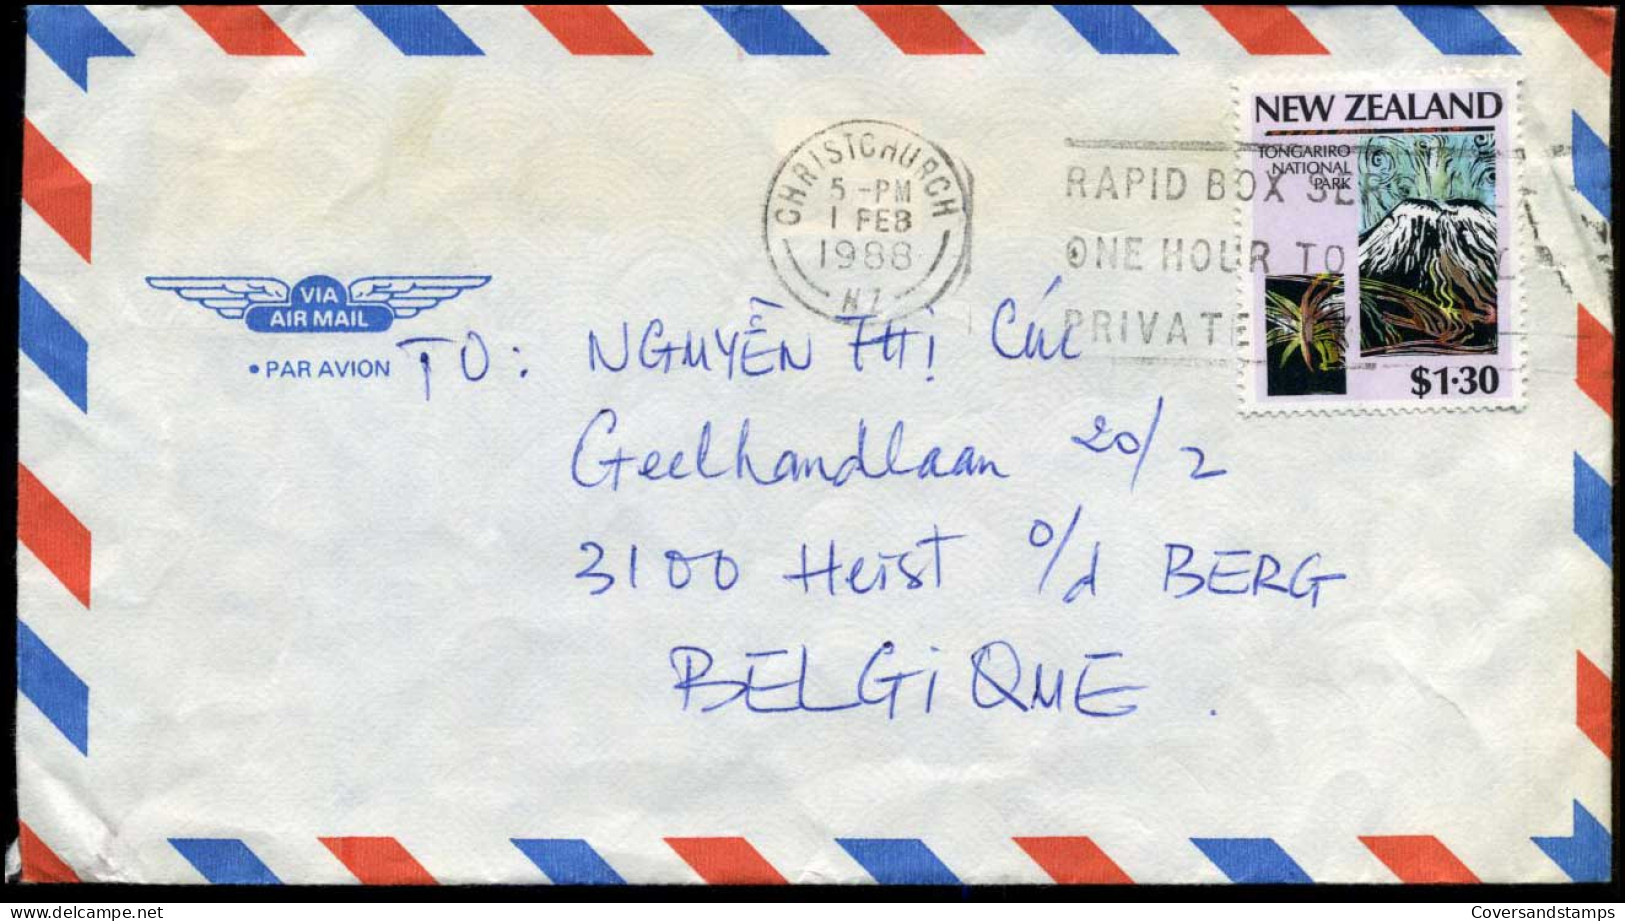 Cover To Heist-op-den-Berg, Belgium - Lettres & Documents